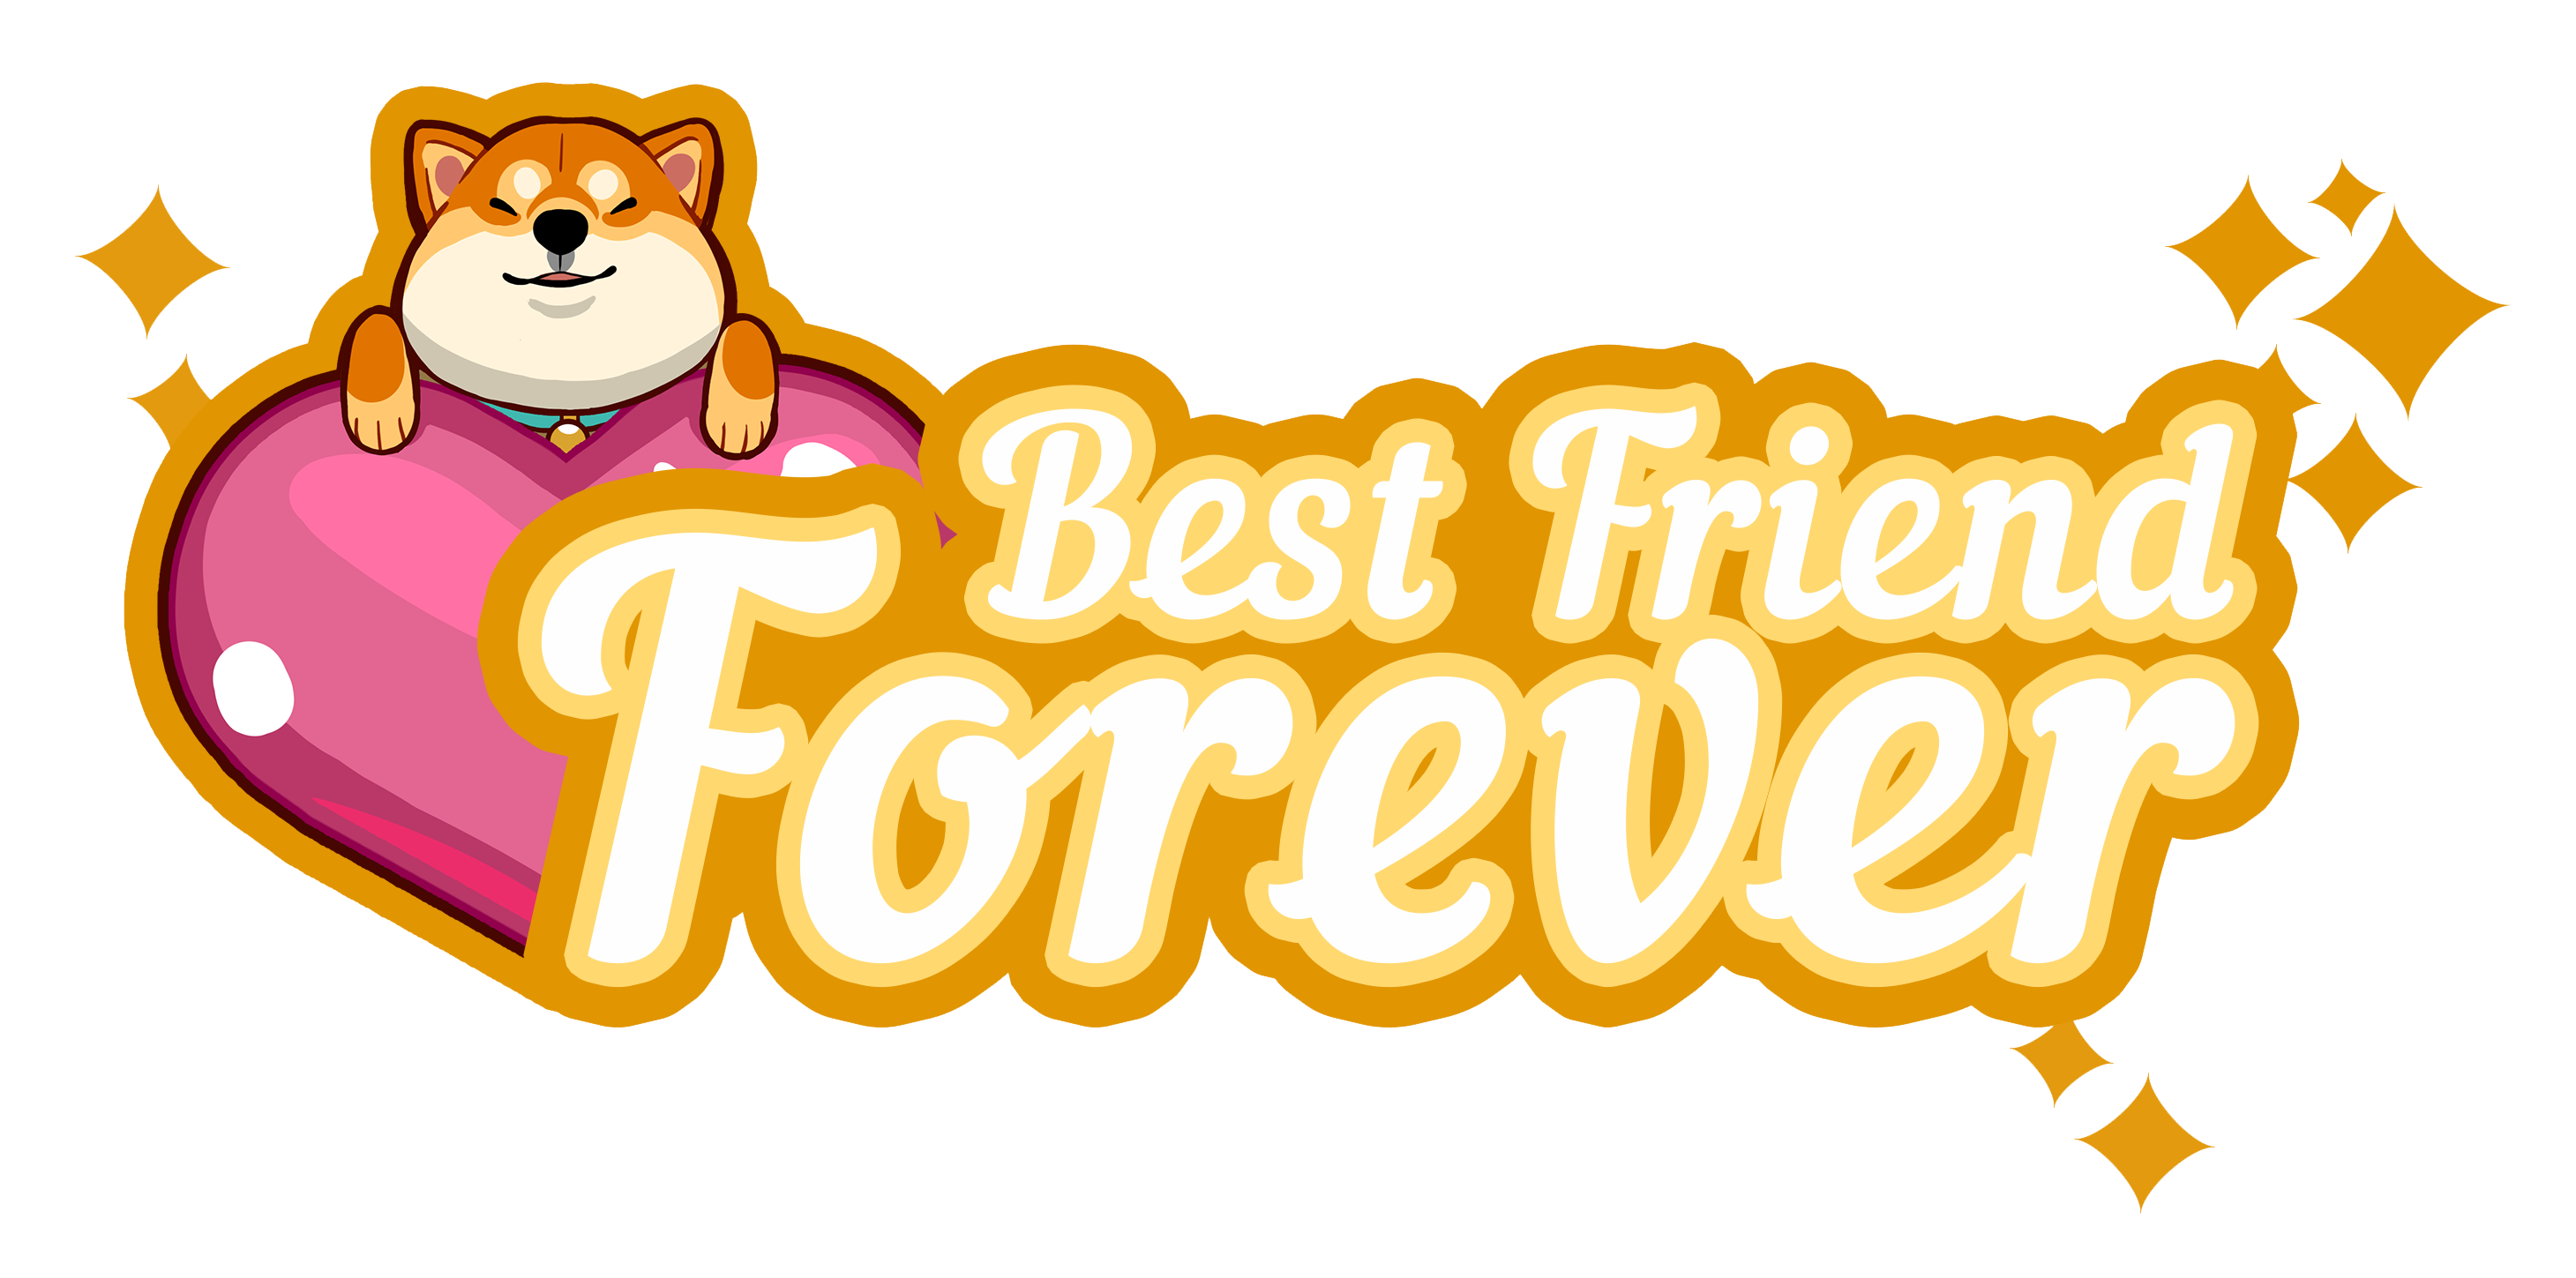 Best forever. Best friends надпись. Best friends Forever надпись. Best friends на прозрачном фоне. Логотип френдс.